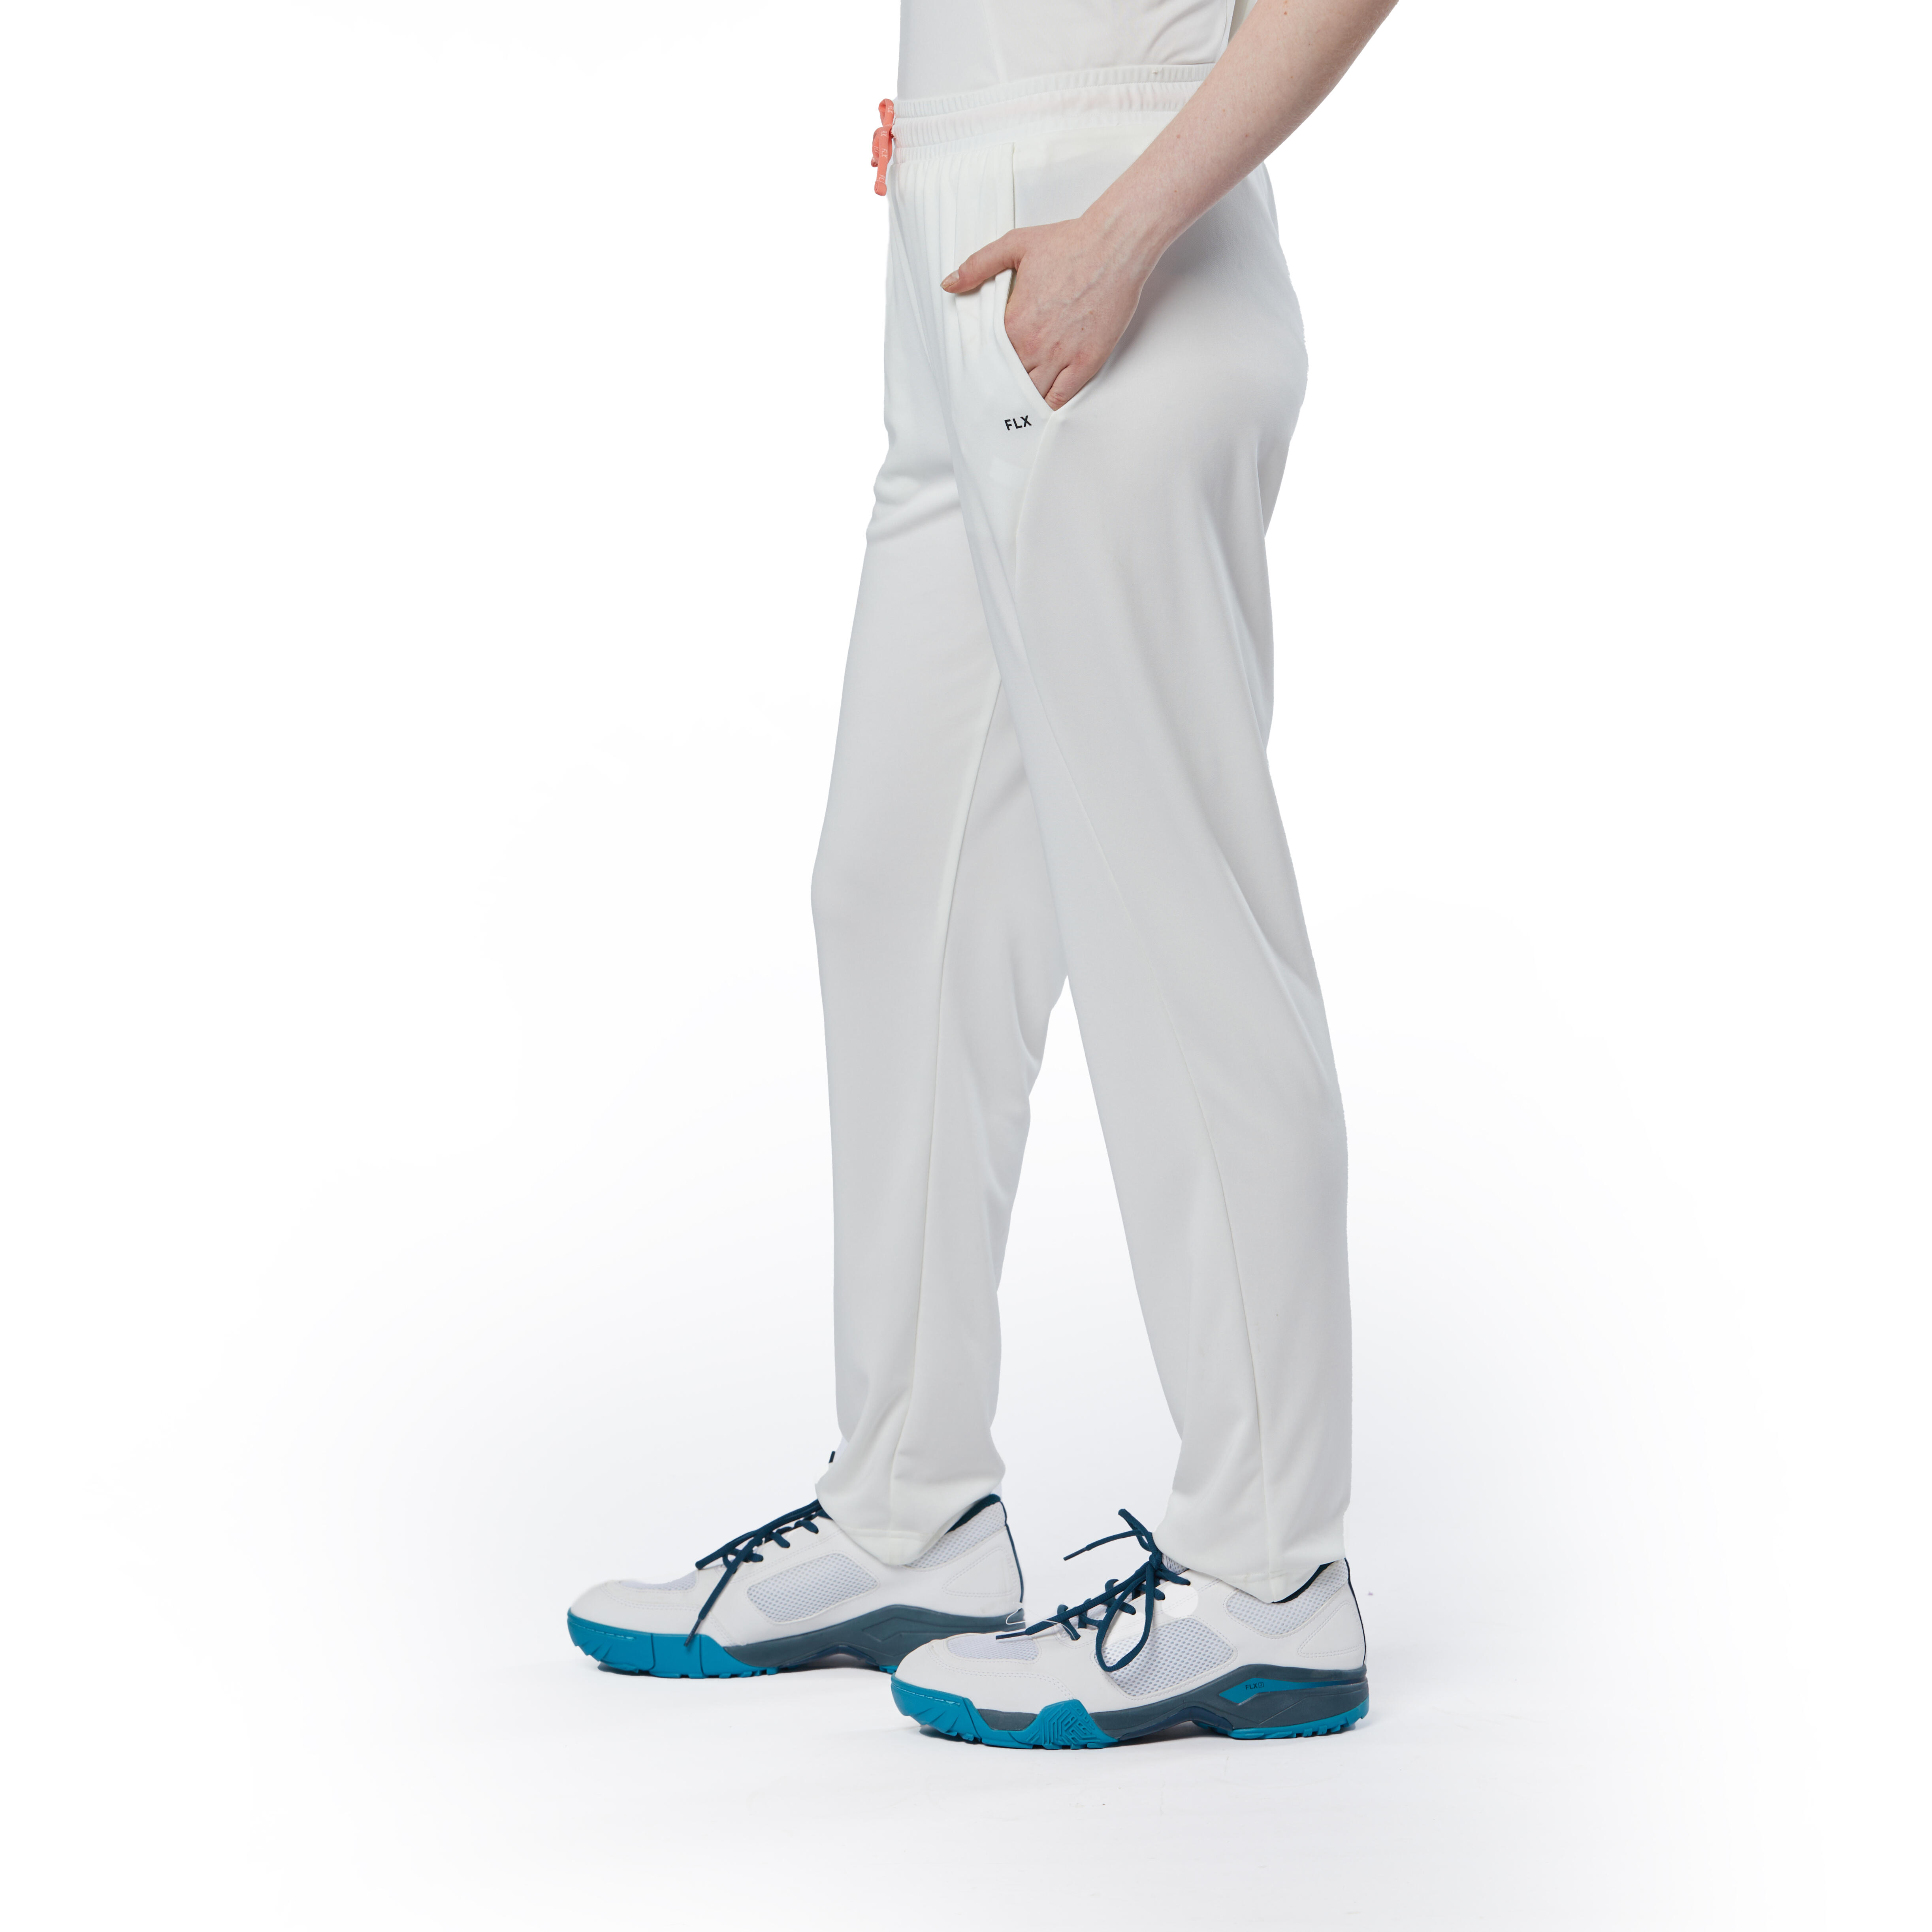 Prokick Elite Cricket Trouser Off White, 2XL